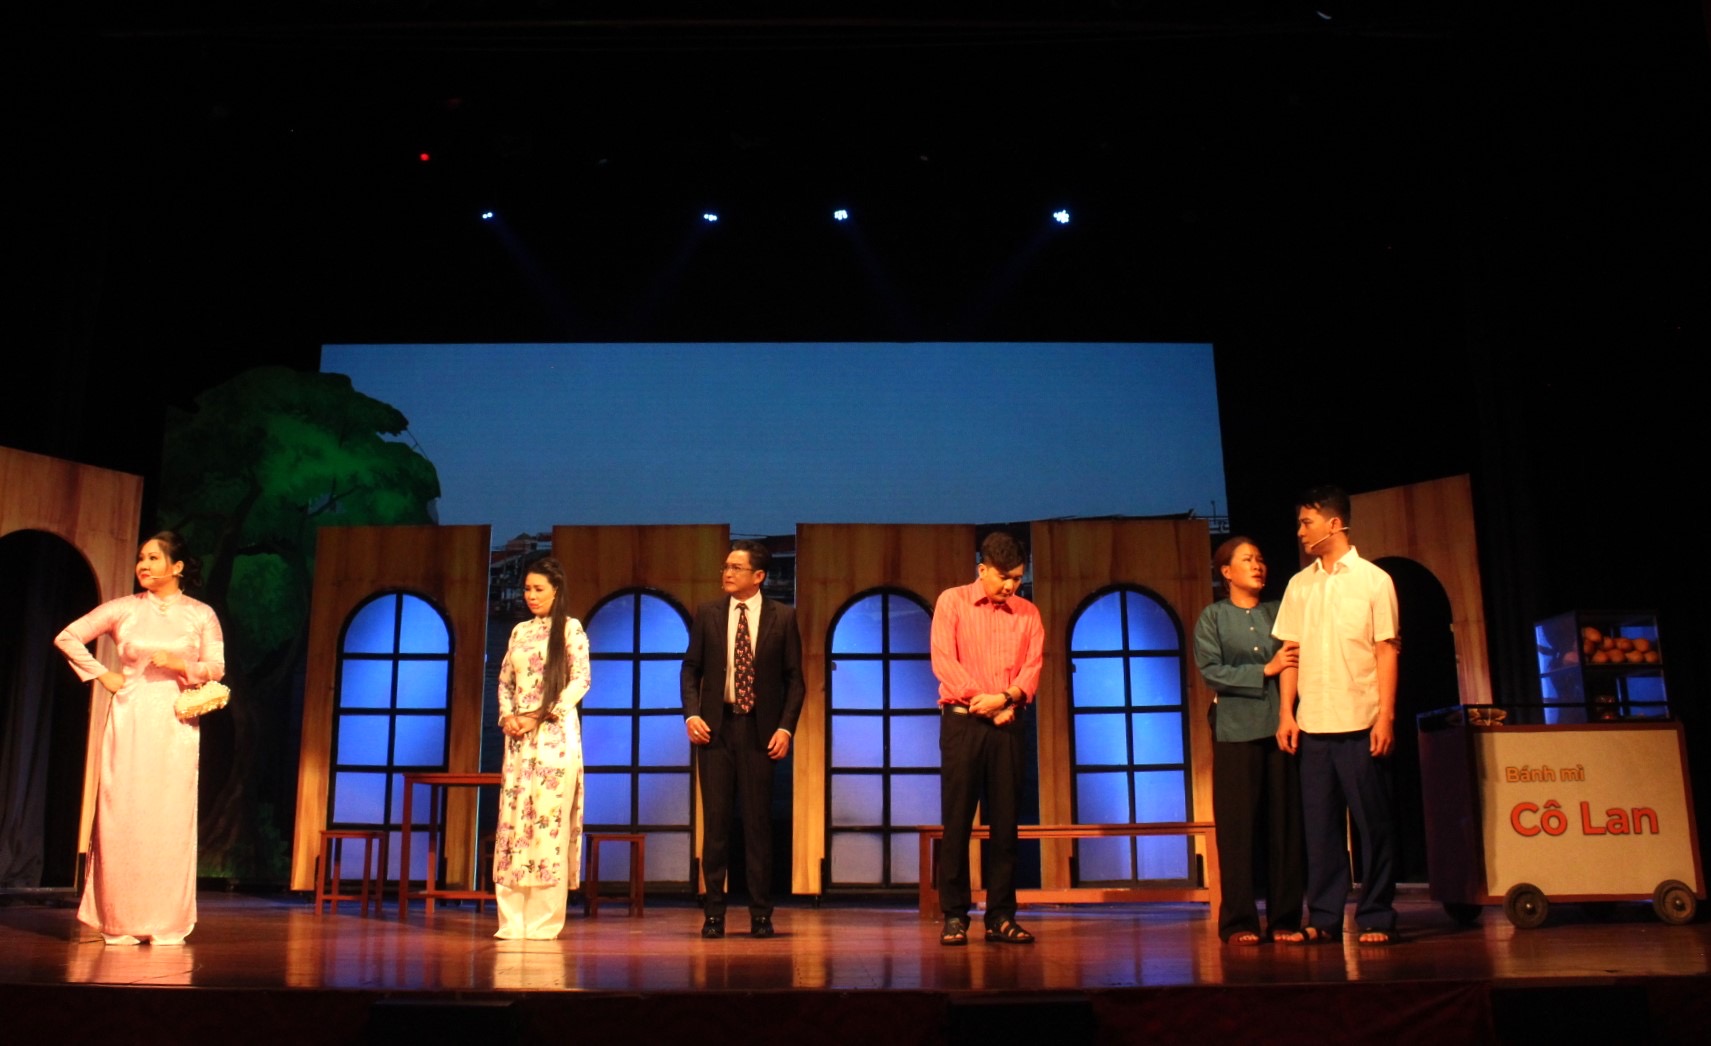 Vở cải lương Đối diện với lương tâm (hay Tuyệt tình ca) được Nhà hát Cải lương Trần Hữu Trang phục dựng, tạo cơ hội cho đội ngũ diễn viên trẻ tiếp cận kịch bản hay.